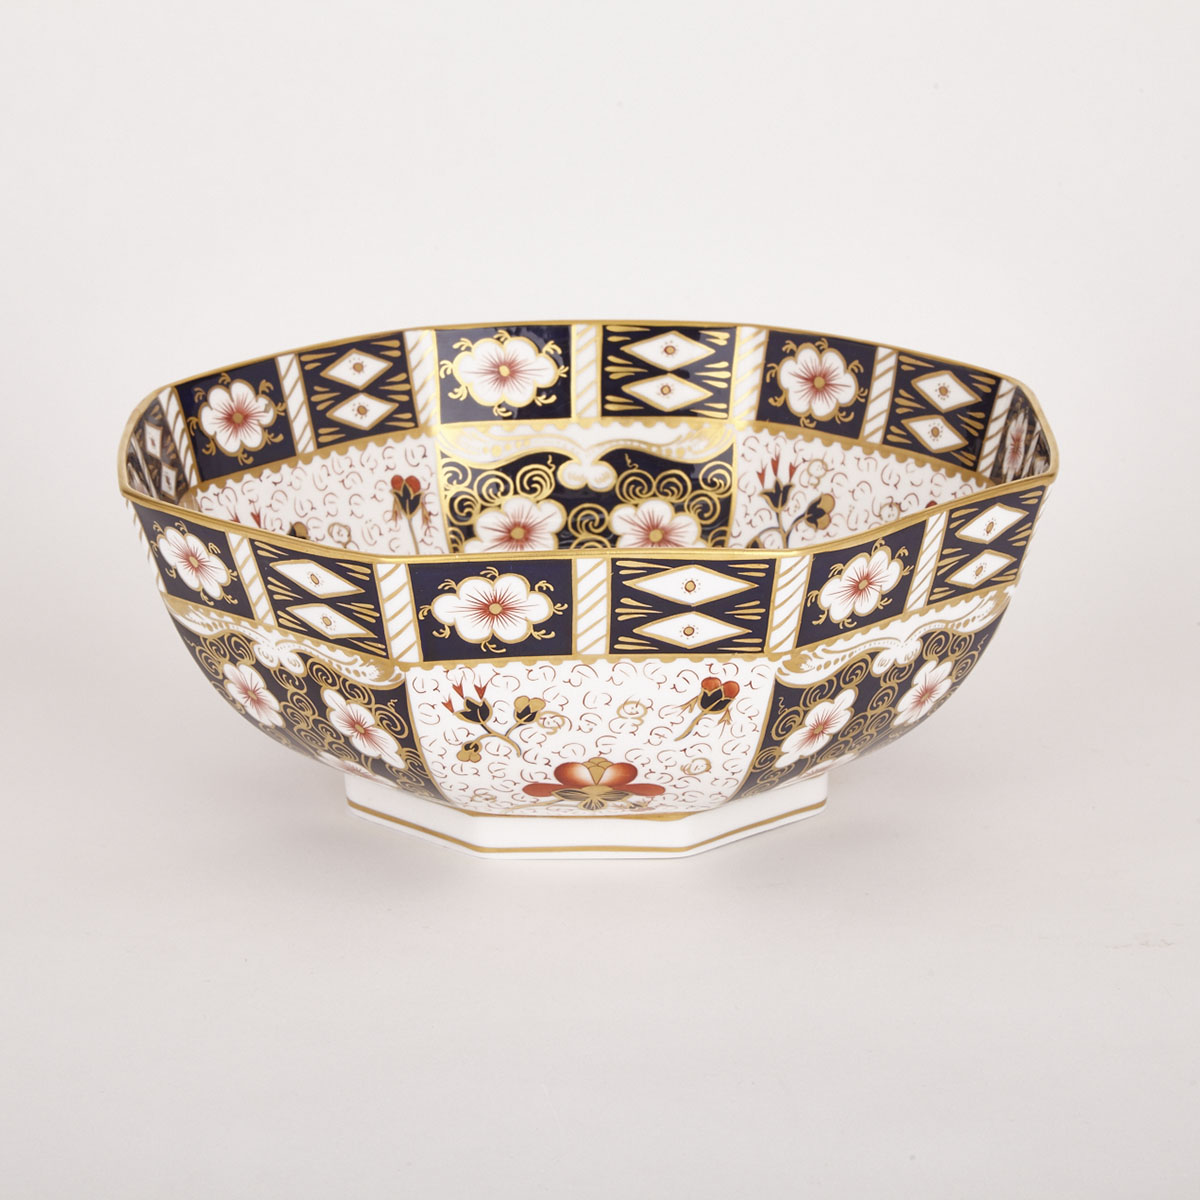 Royal Crown Derby ‘Imari’ (2451) Pattern Octagonal Bowl, 1969